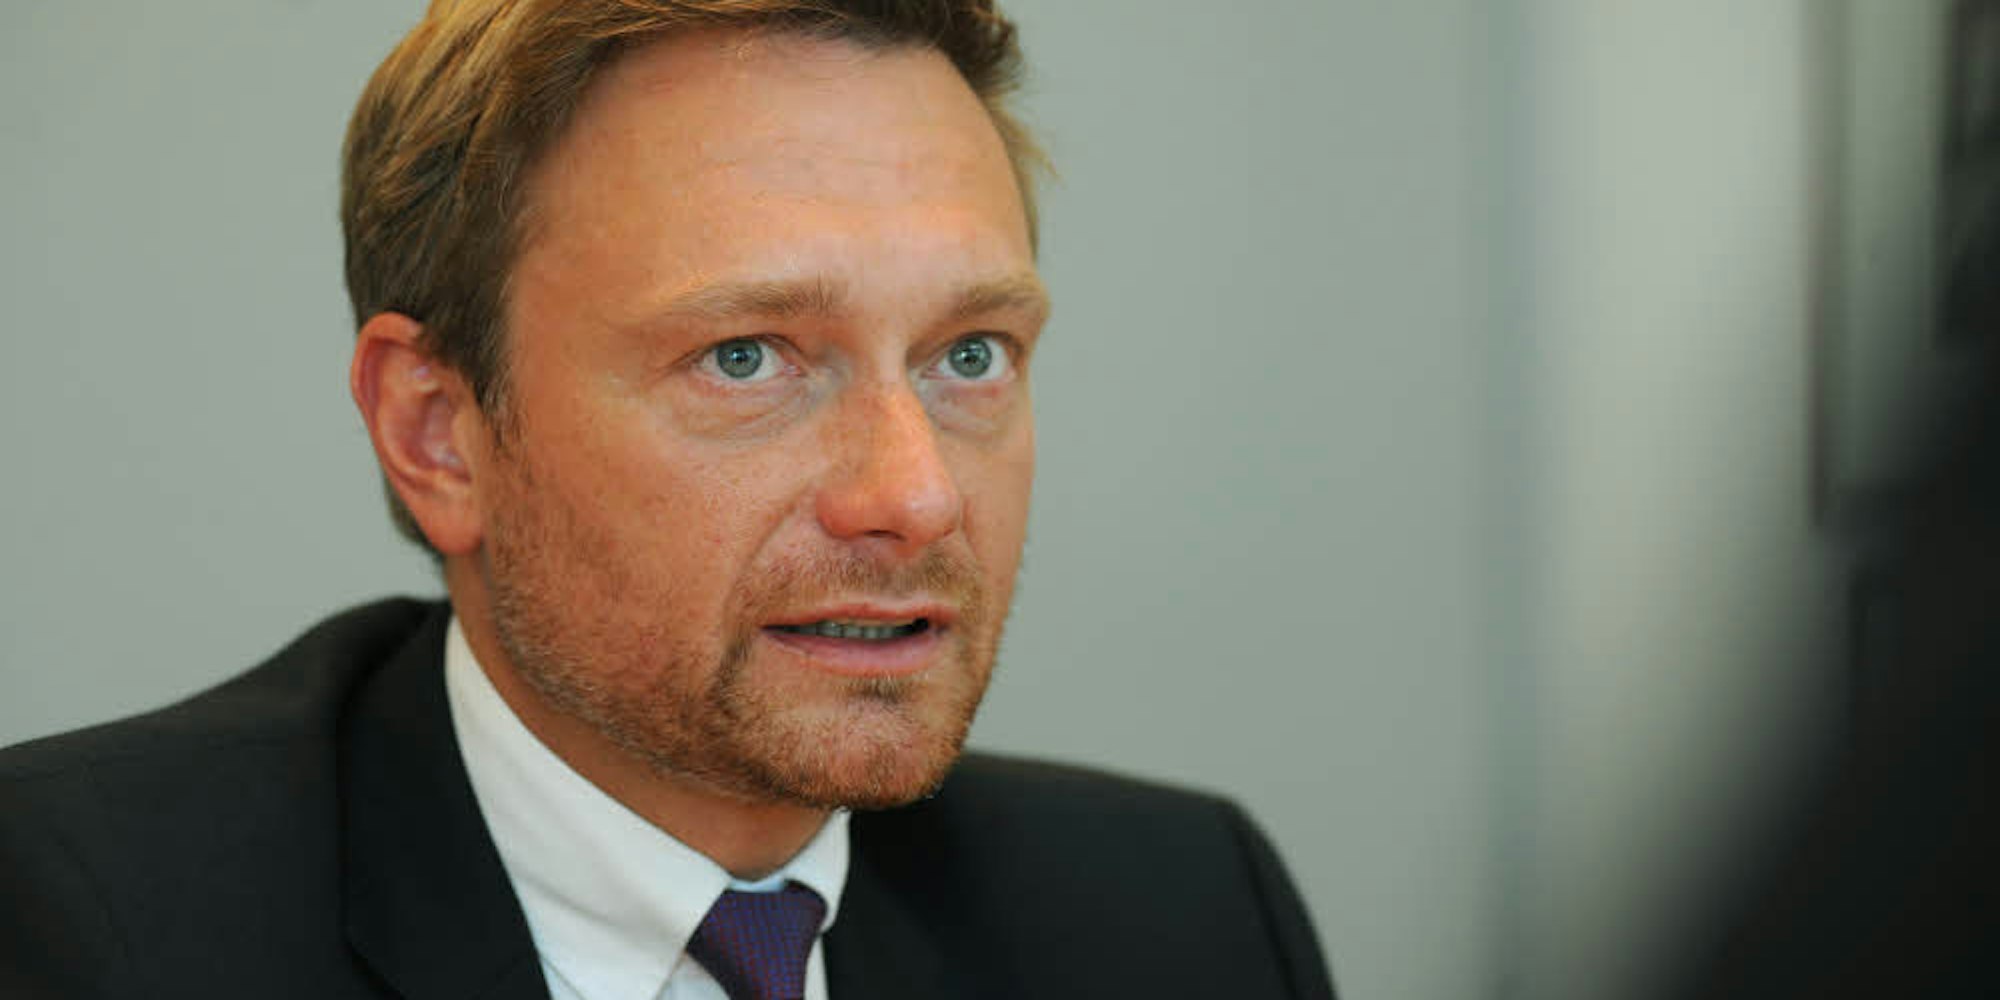 Der FDP-Bundesvorsitzende Christian Lindner